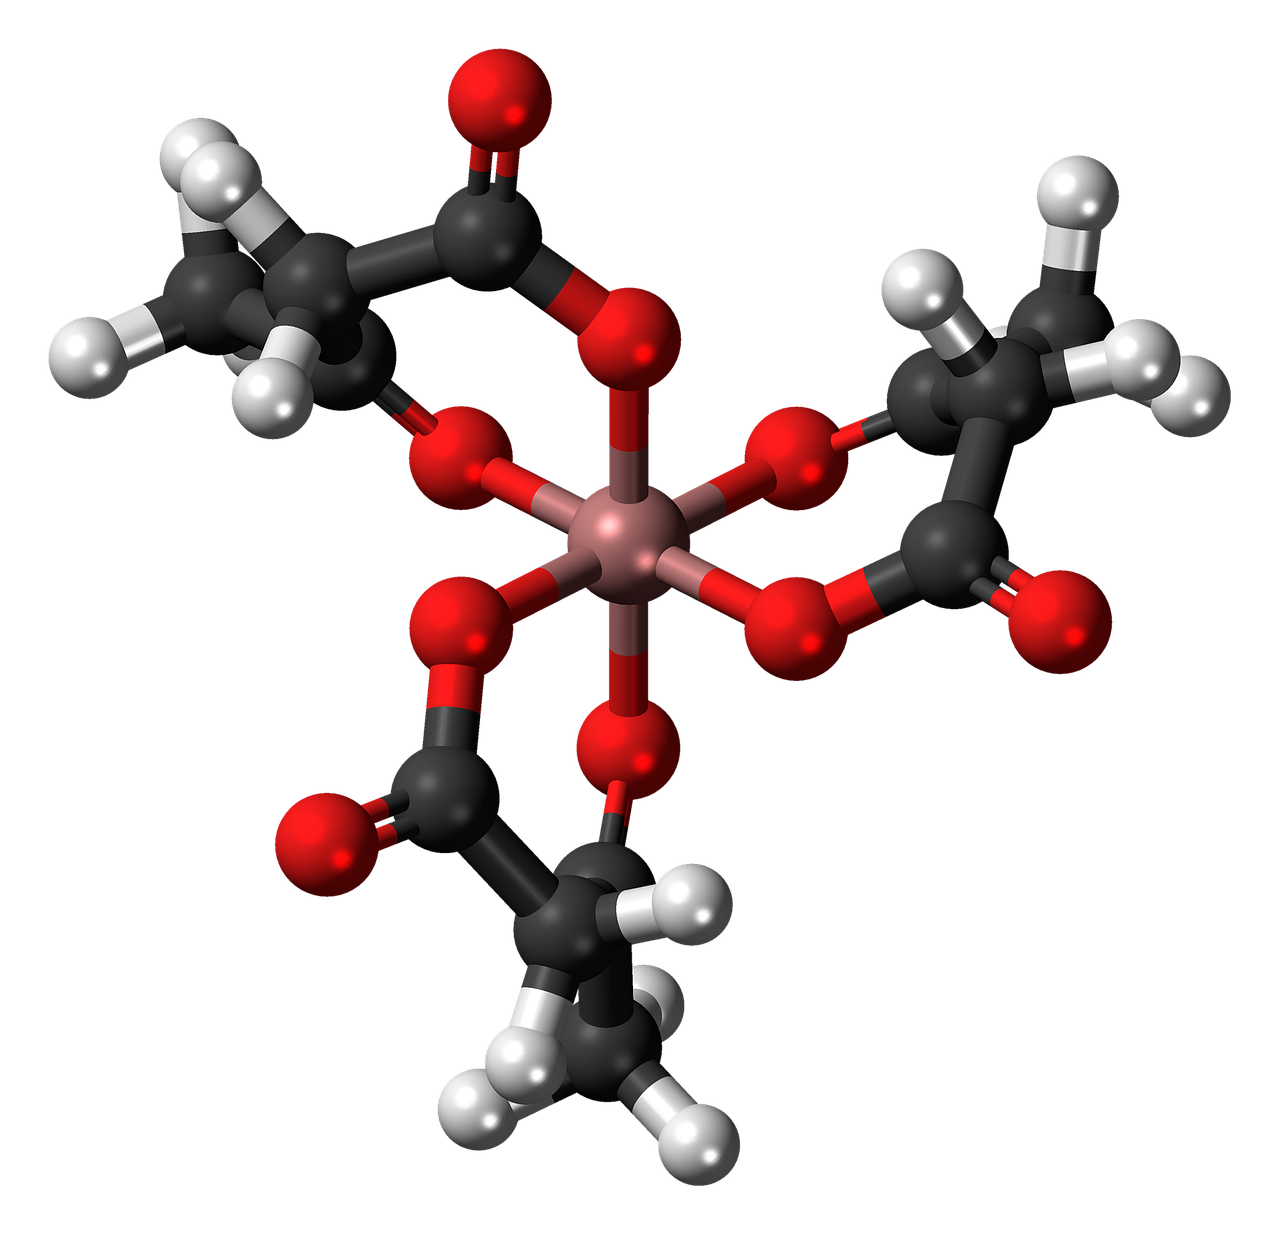 Aliuminio Acetoacetatas, Kompleksas, Molekulė, Modelis, Struktūra, Privalomas, Chemija, Mokslas, Tyrimai, Junginys